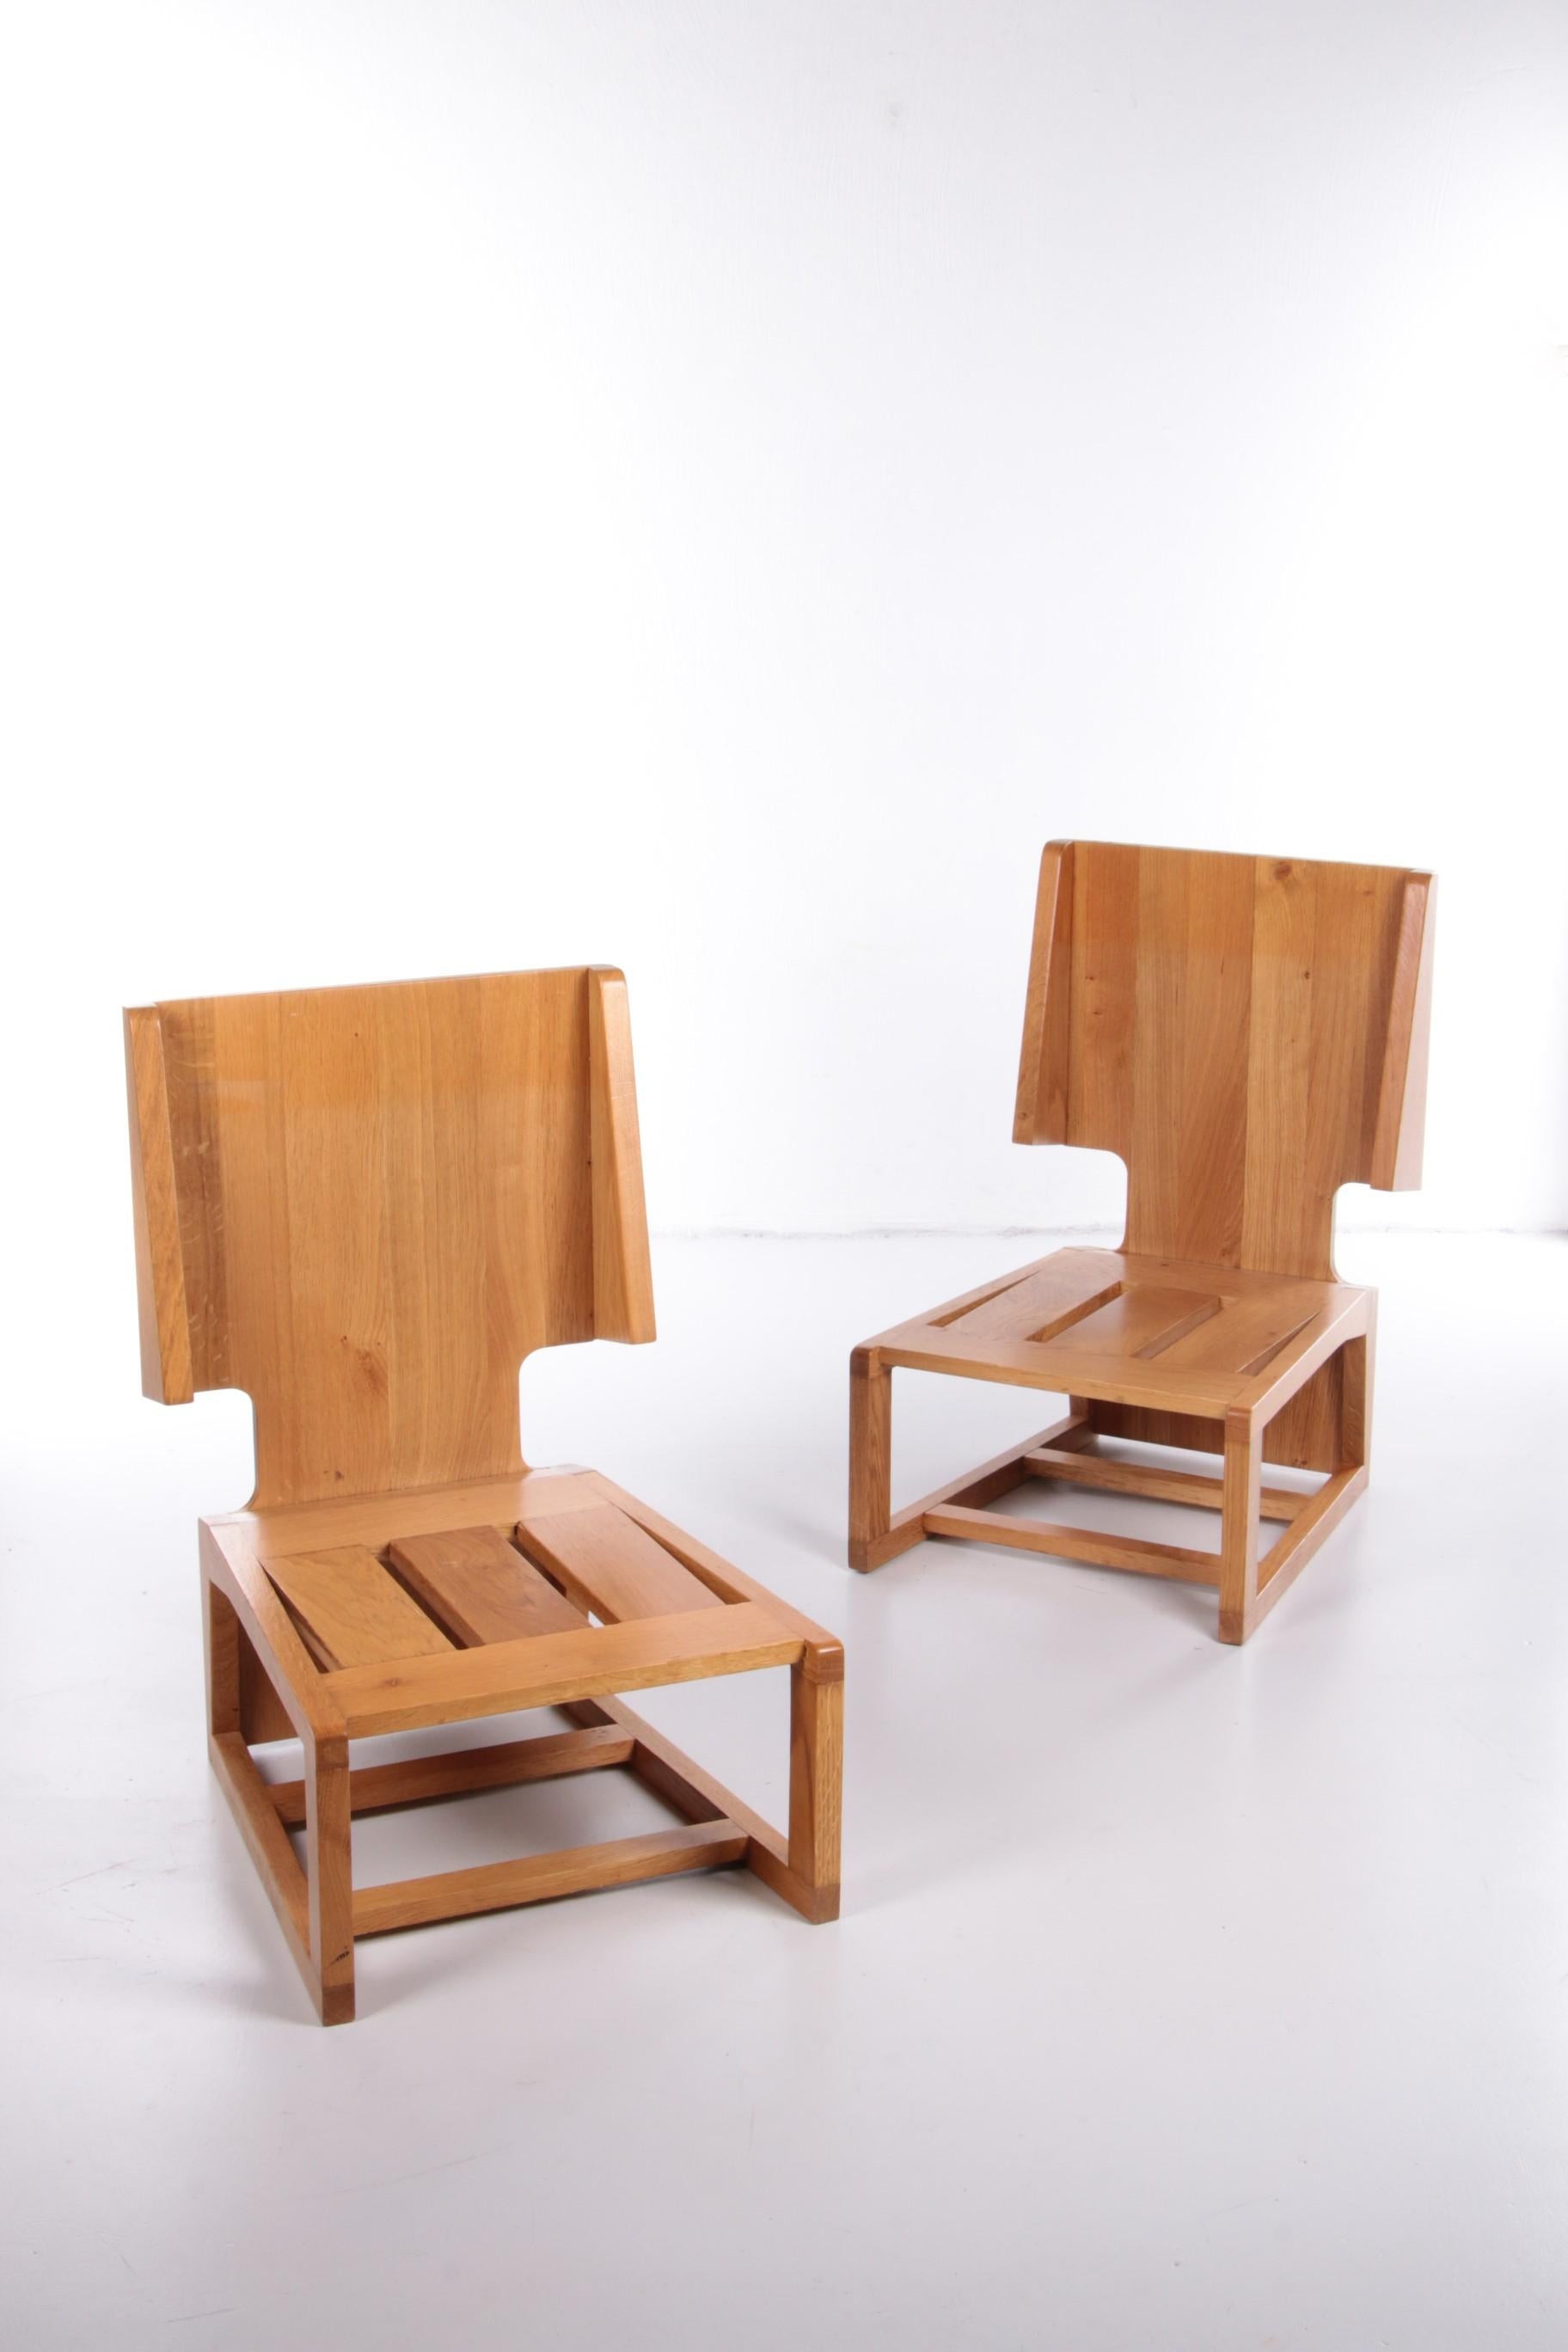 Bel ensemble de deux fauteuils design vintage au design unique et particulier.

Ces chaises longues rétro vintage ont été produites dans les années 1970 en France. Le cadre est fait d'un chêne clair et le siège est fait d'un magnifique tissu rouge